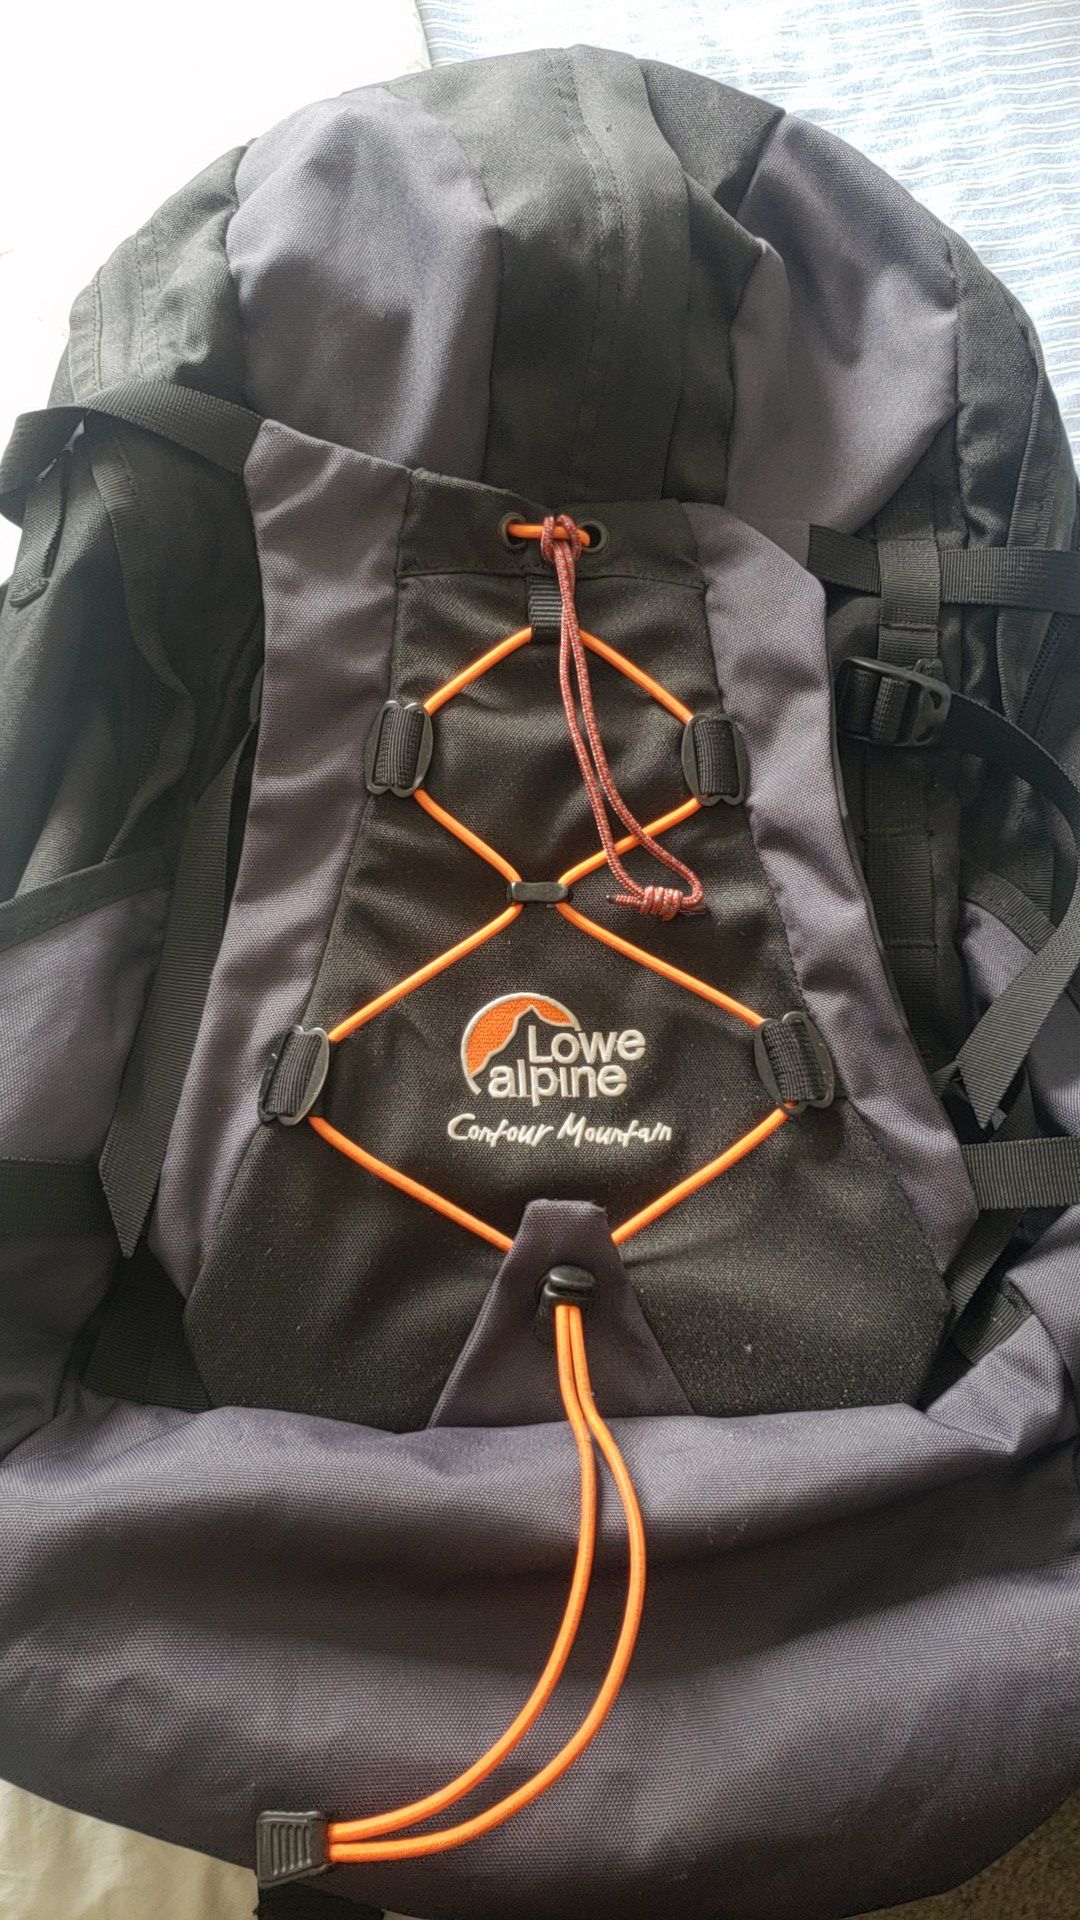 Lowe alpine Hiking backpack